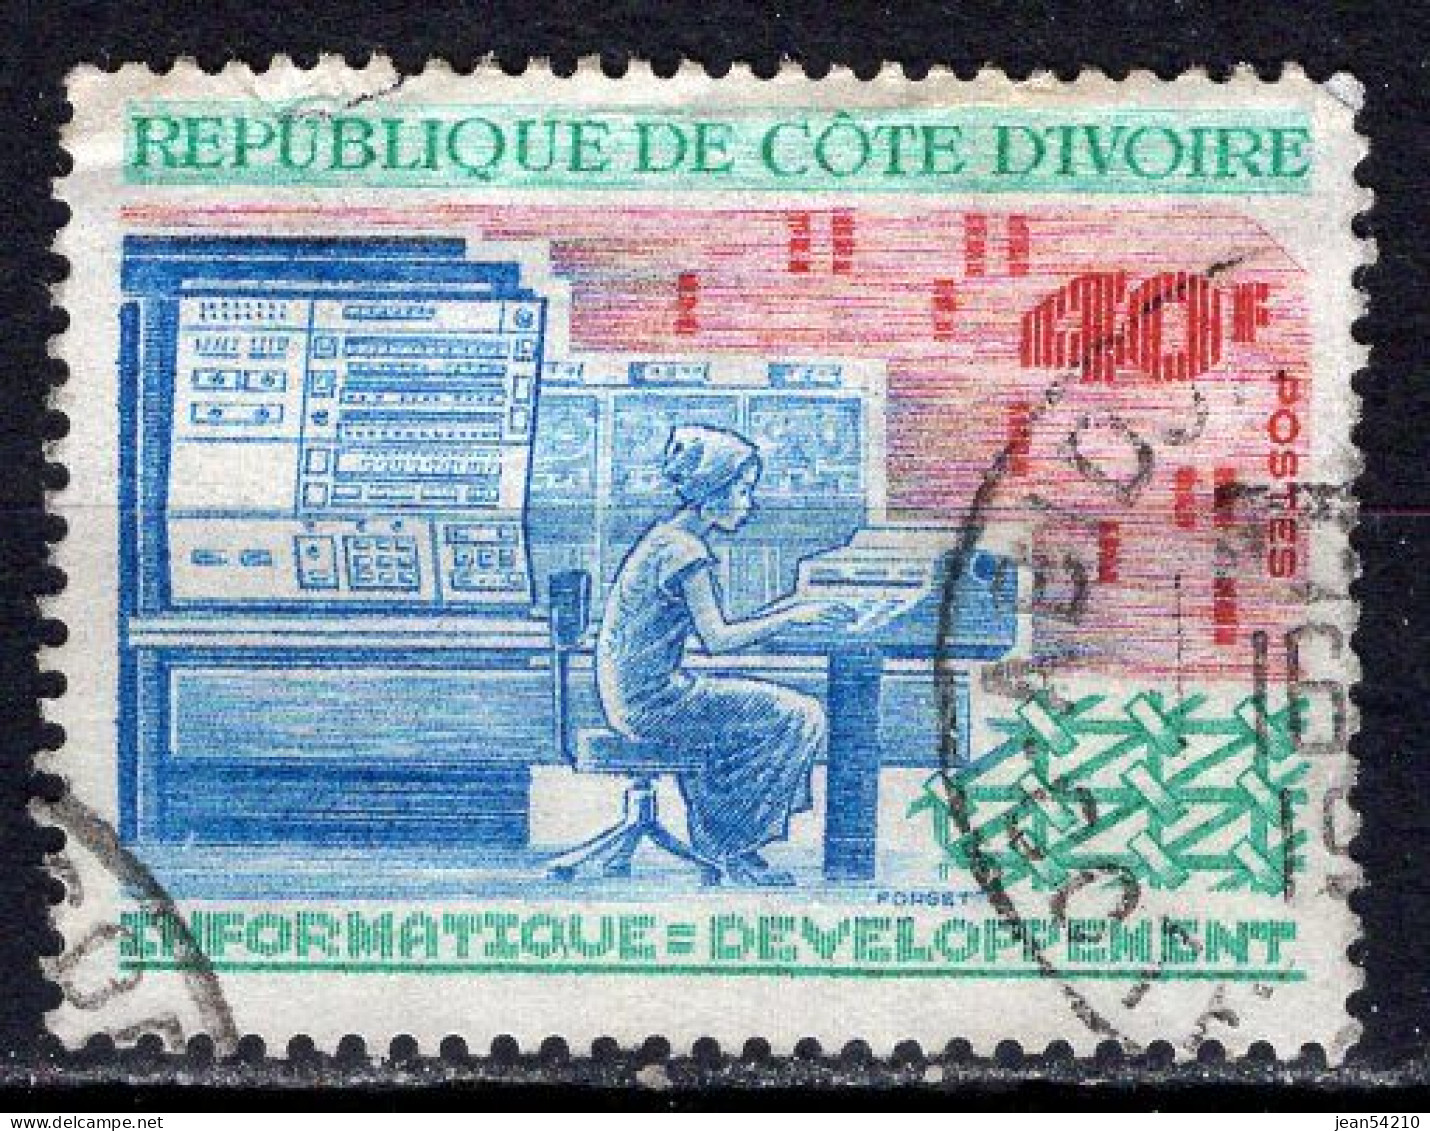 COTE D'IVOIRE - Timbre N°340 Oblitéré - Côte D'Ivoire (1960-...)